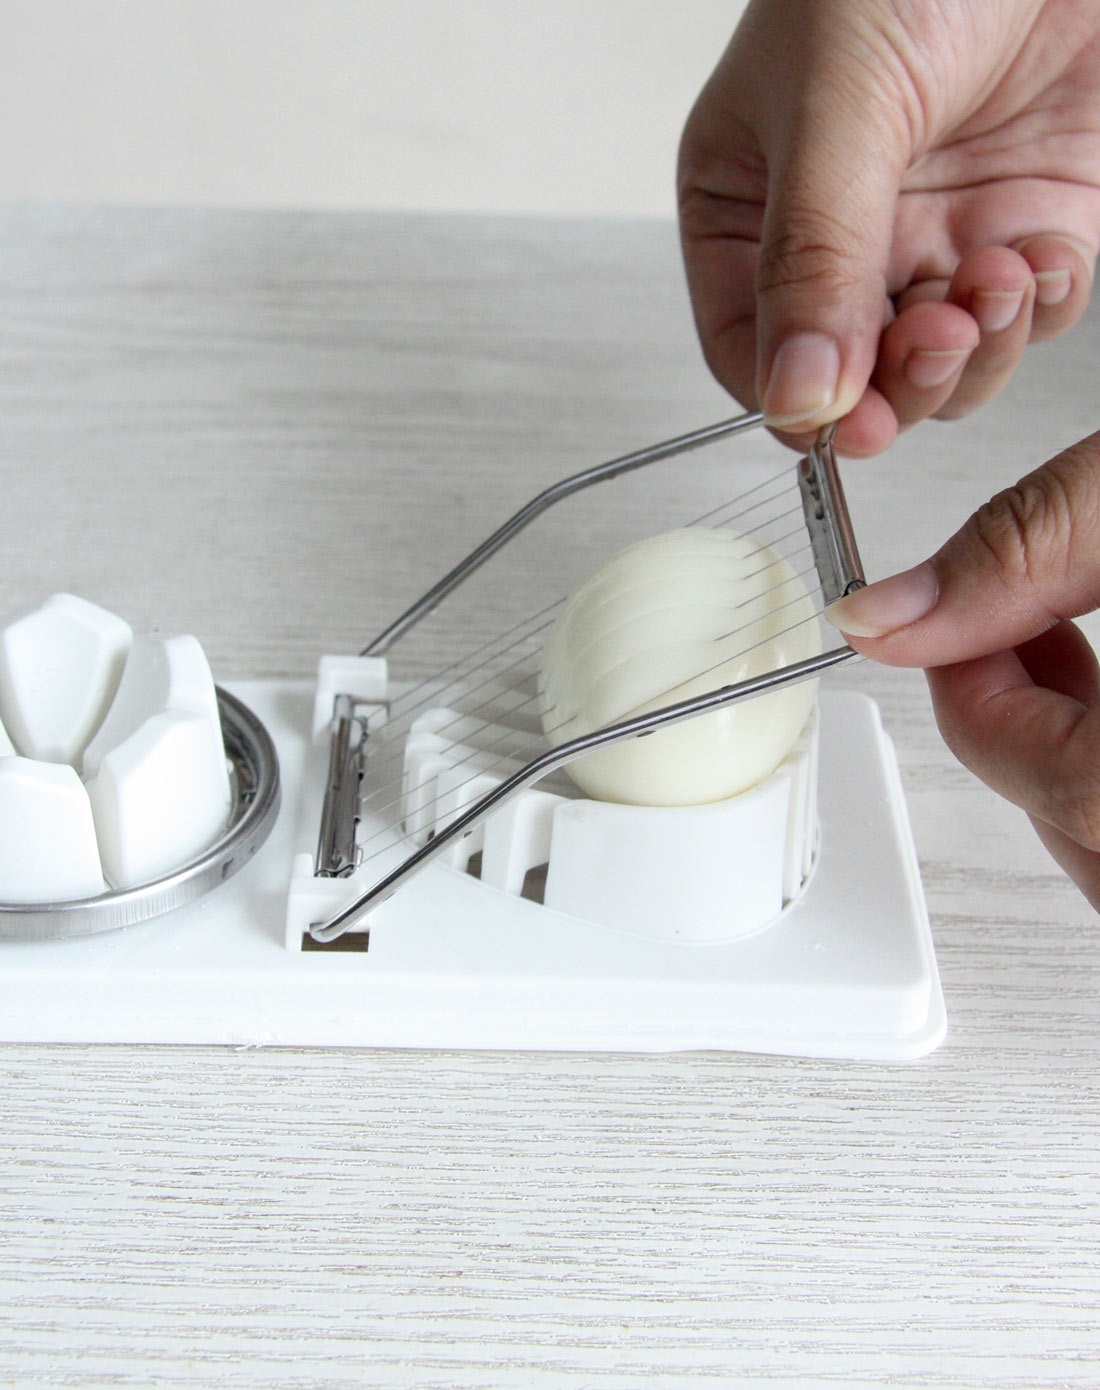 Dụng cụ cắt &amp; tạo hình trứng dùng cho nhà hàng, quán ăn nội địa Nhật Bản